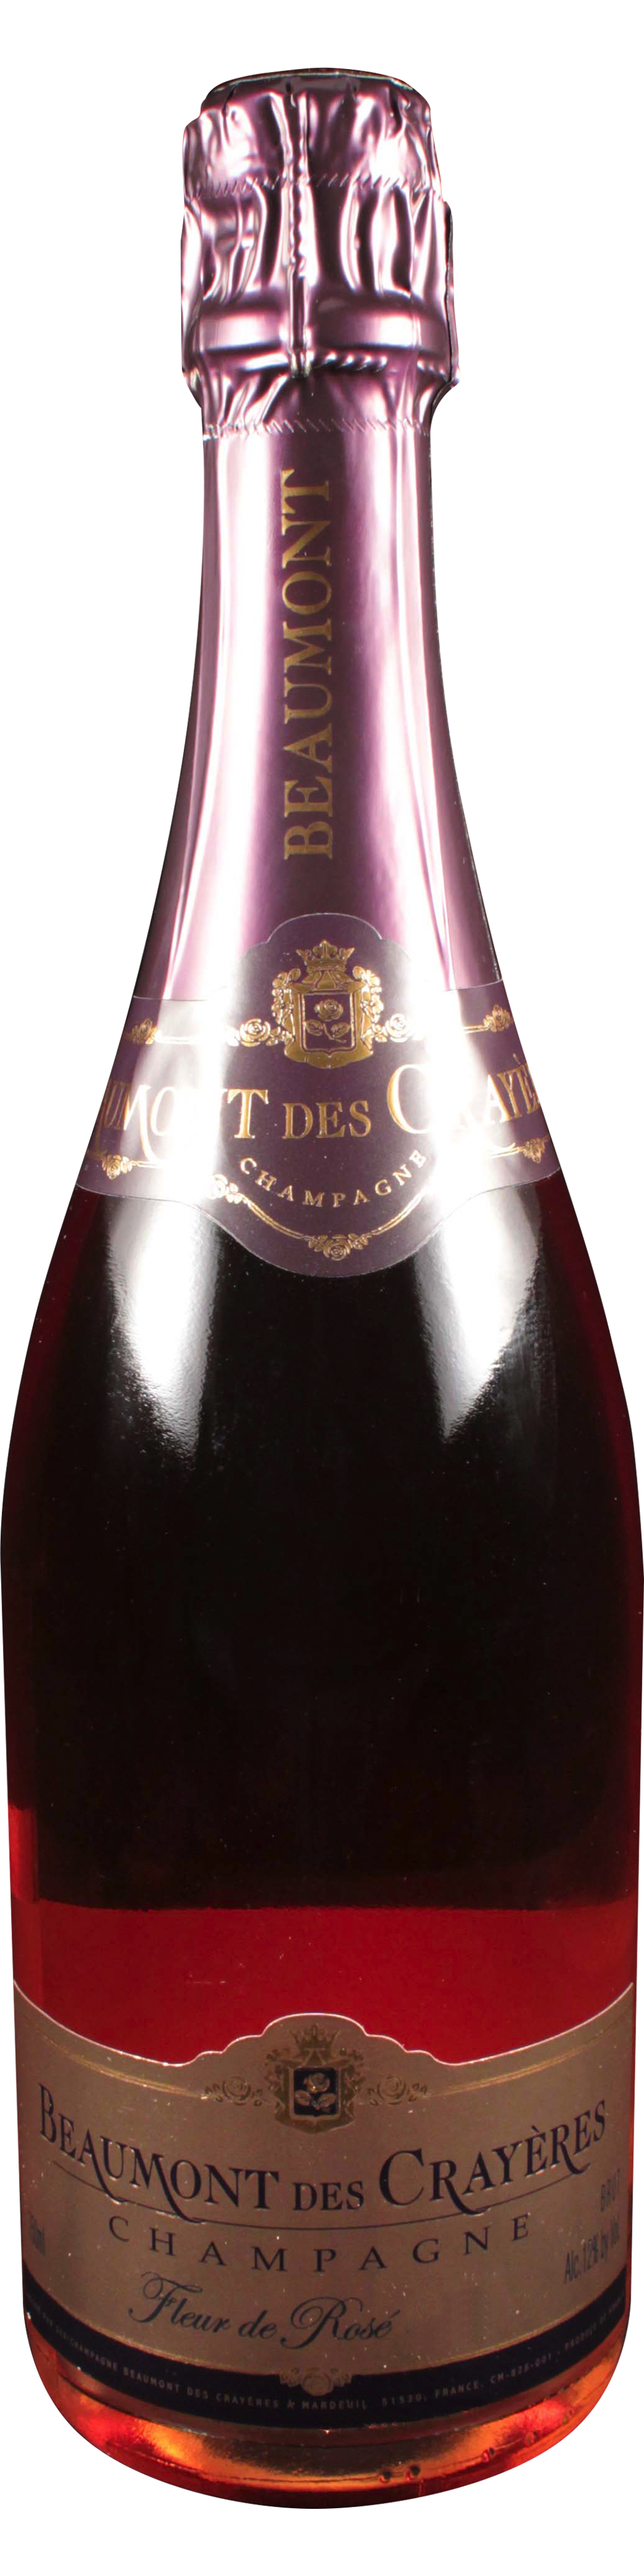 Bottle shot of 2004 Fleur de Rosé